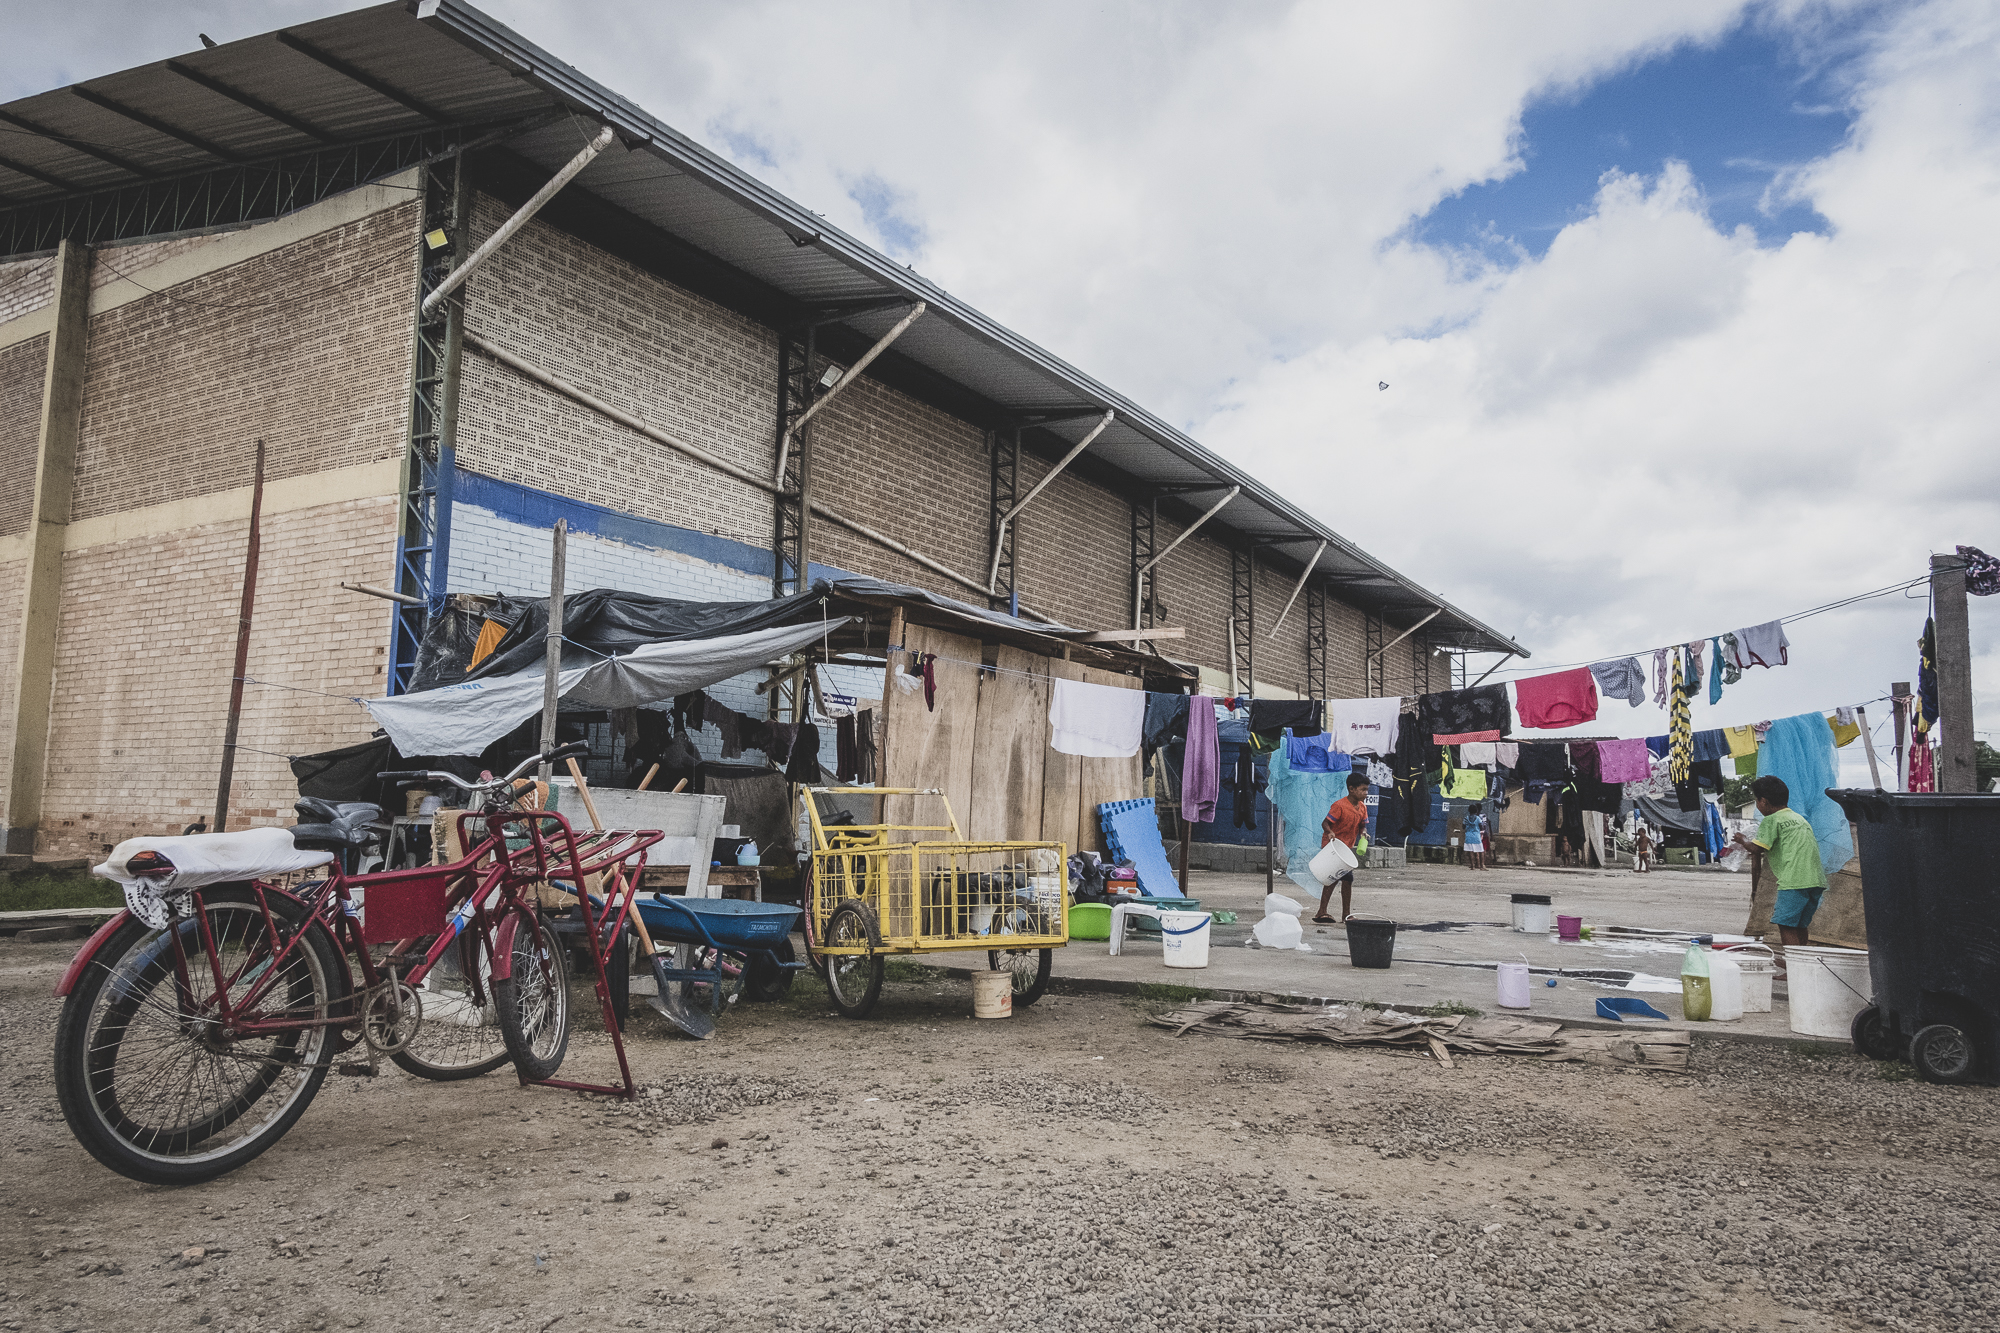 Cerca de 300 indígenas ainda vivem no antigo abrigo Pintolândia: temor de despejo em Boa Vista após Exército retirar serviços para refugiados (Foto: Leonardo Milano)